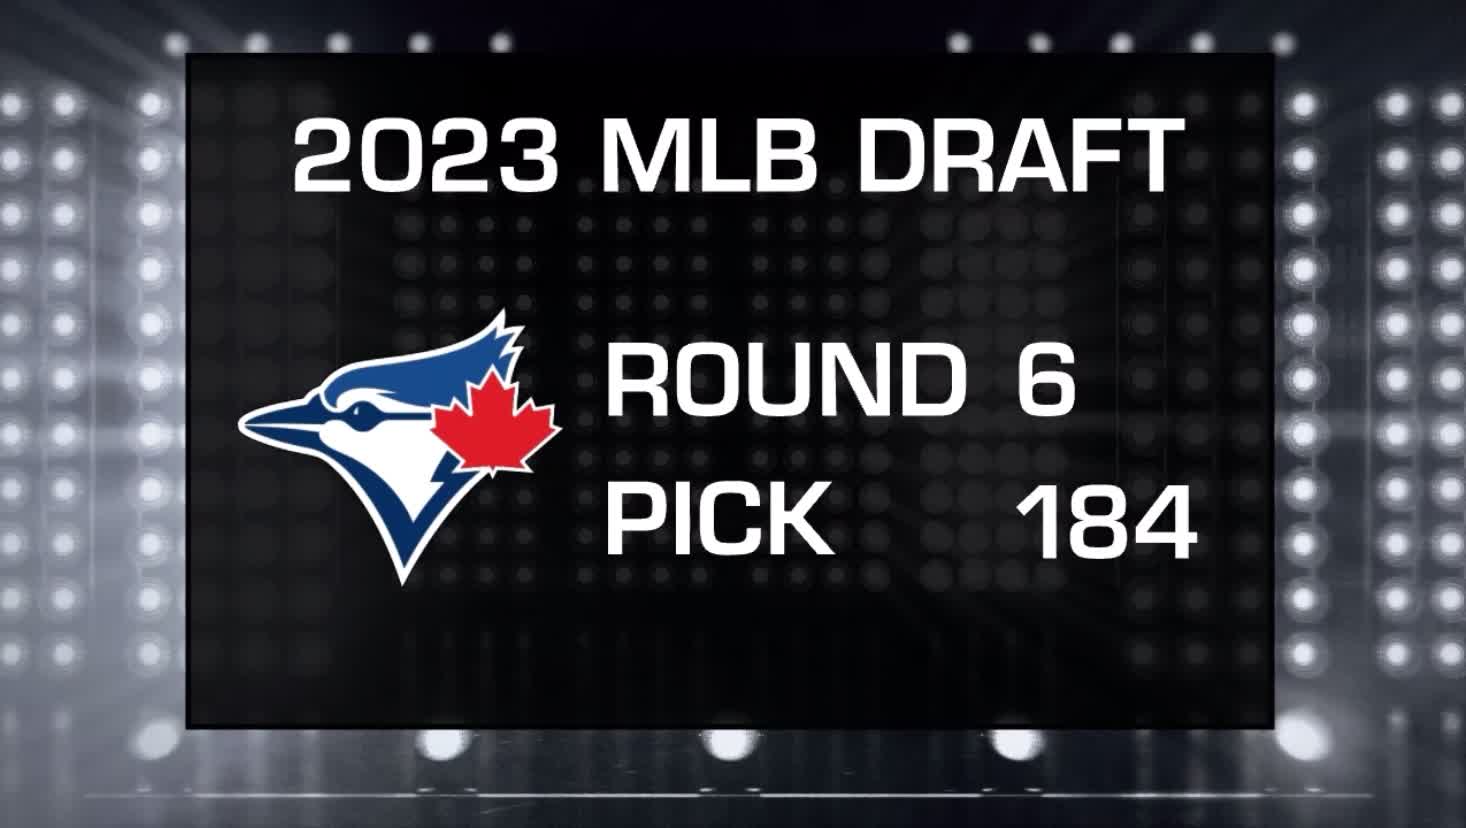 Toronto Blue Jays Draft Analysis. The Toronto Blue Jays had their